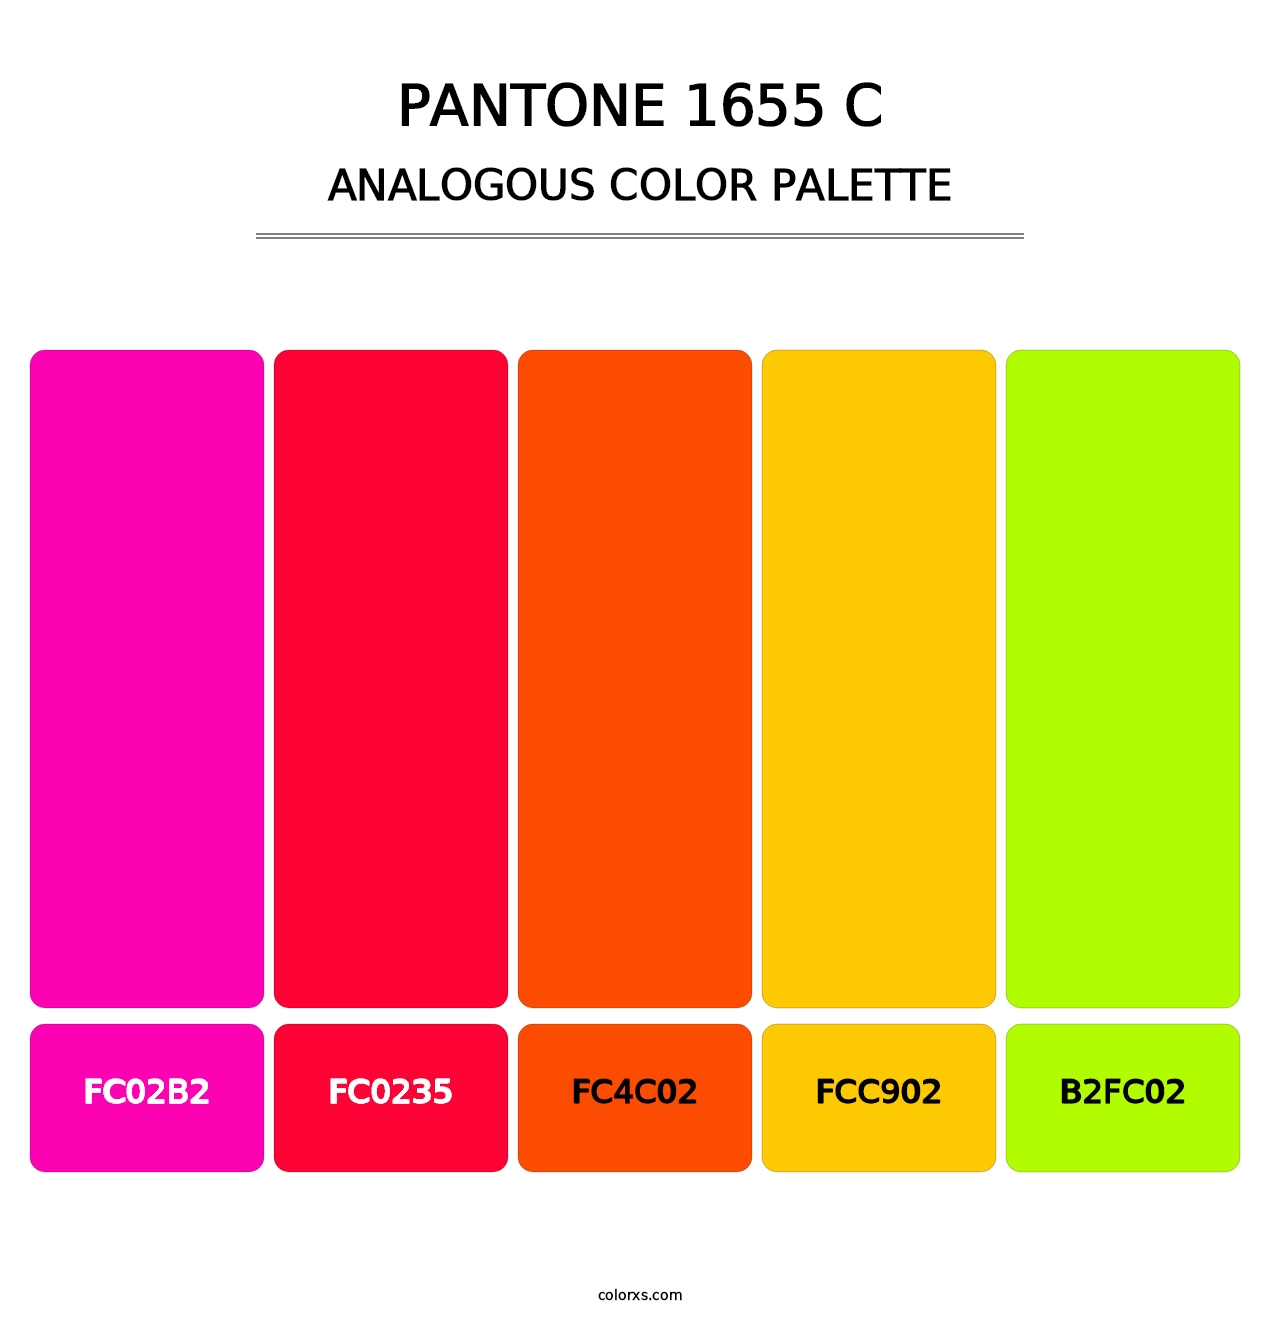 PANTONE 1655 C - Analogous Color Palette